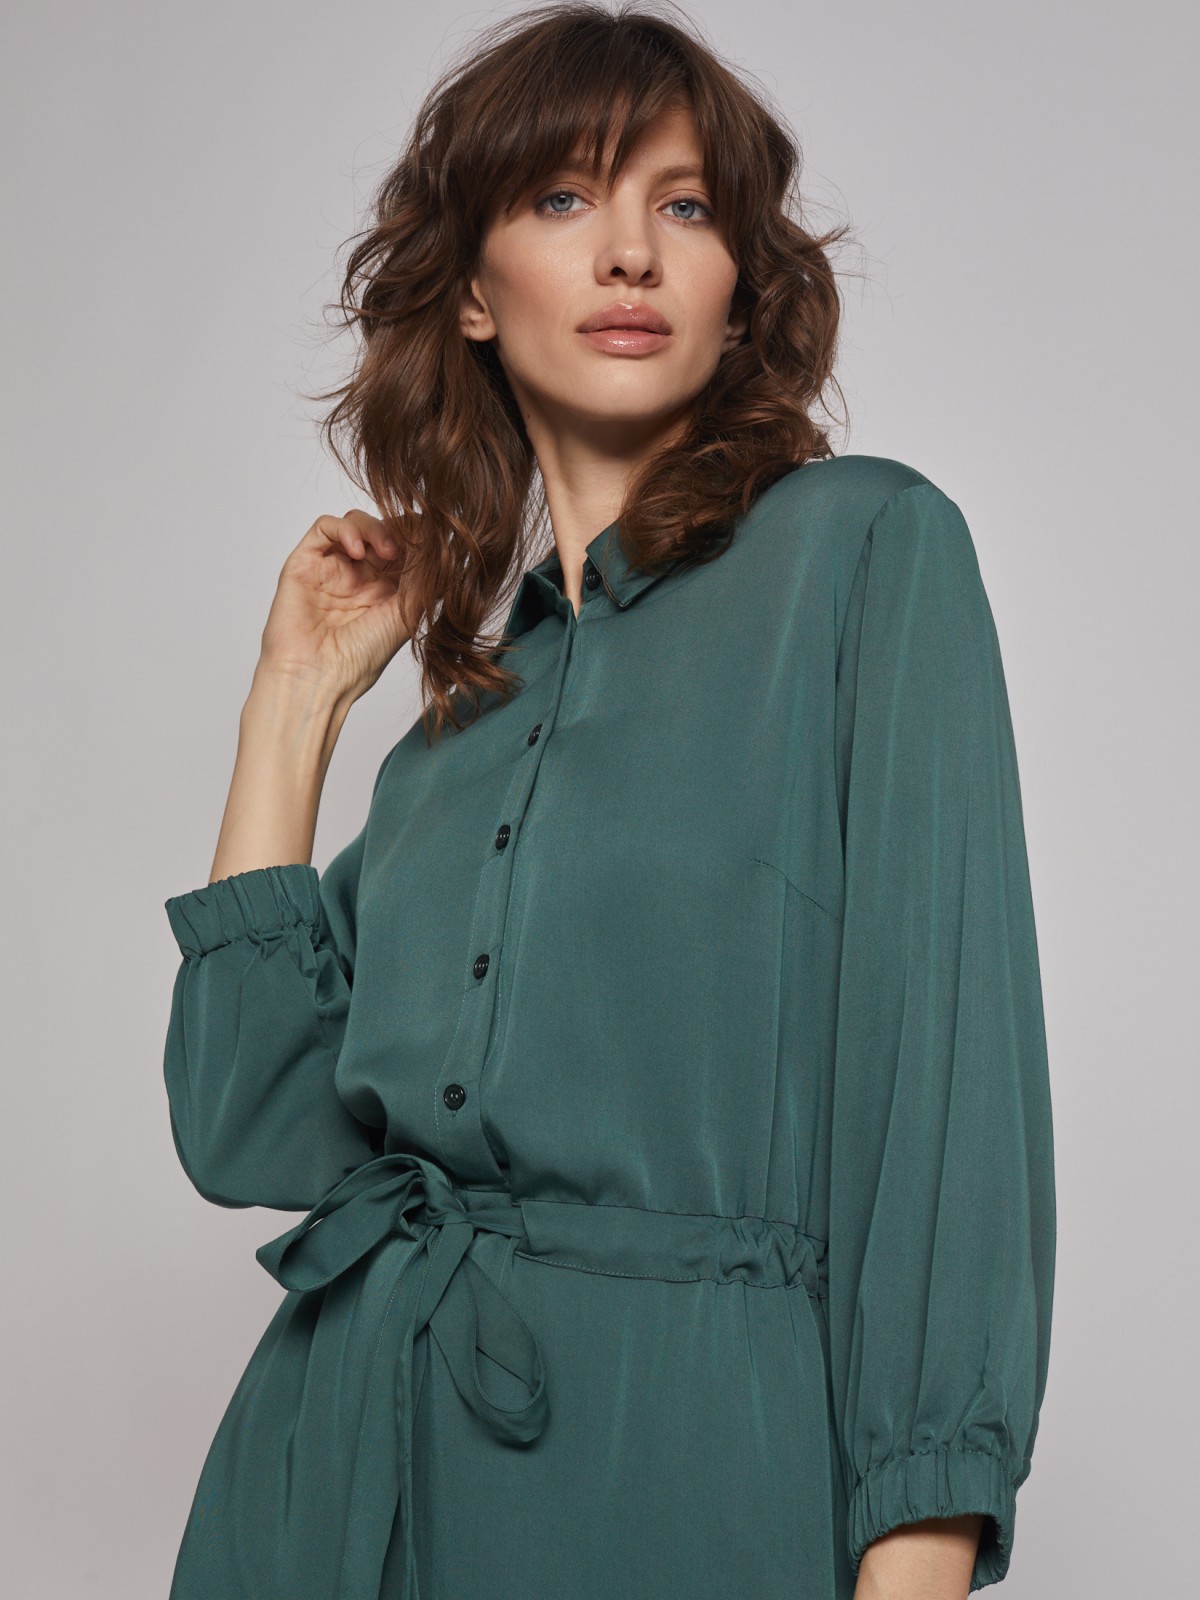 Платье-рубашка на кулиске zolla 222328239031, цвет темно-зеленый, размер S - фото 3